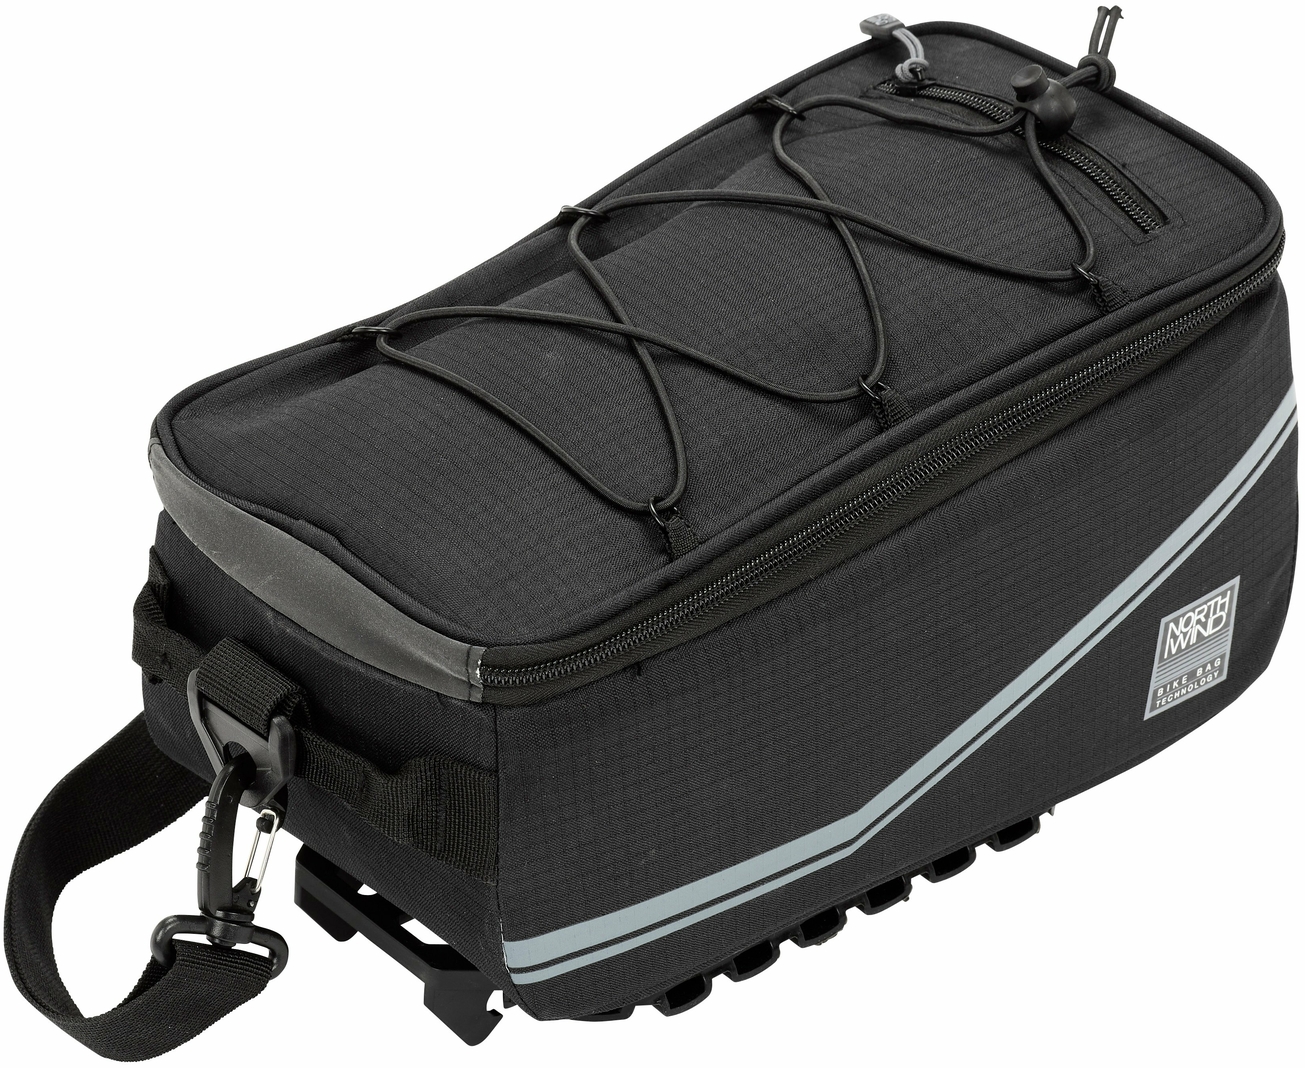 Northwind Gepäckträgertasche Smartbag Pure MonkeyLoad-T